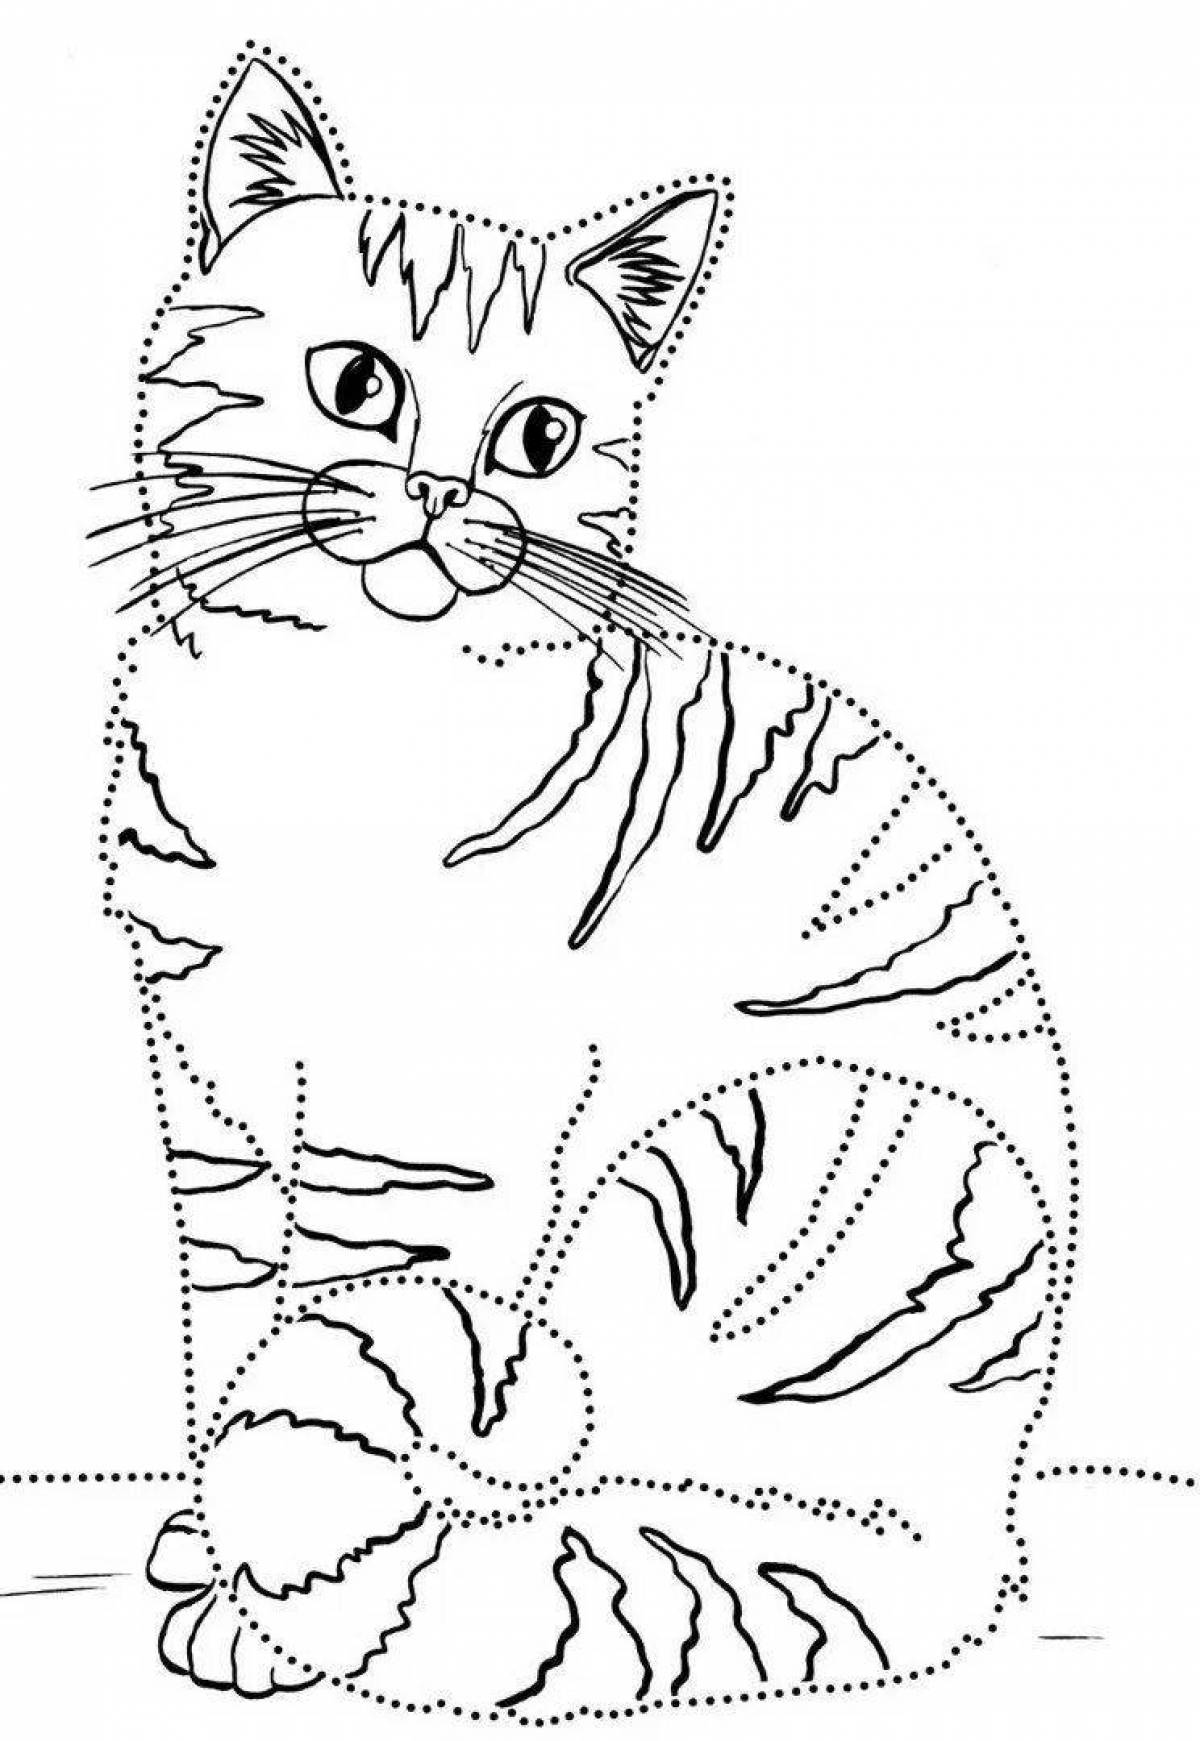 Веселая раскраска котенка для детей 5-6 лет